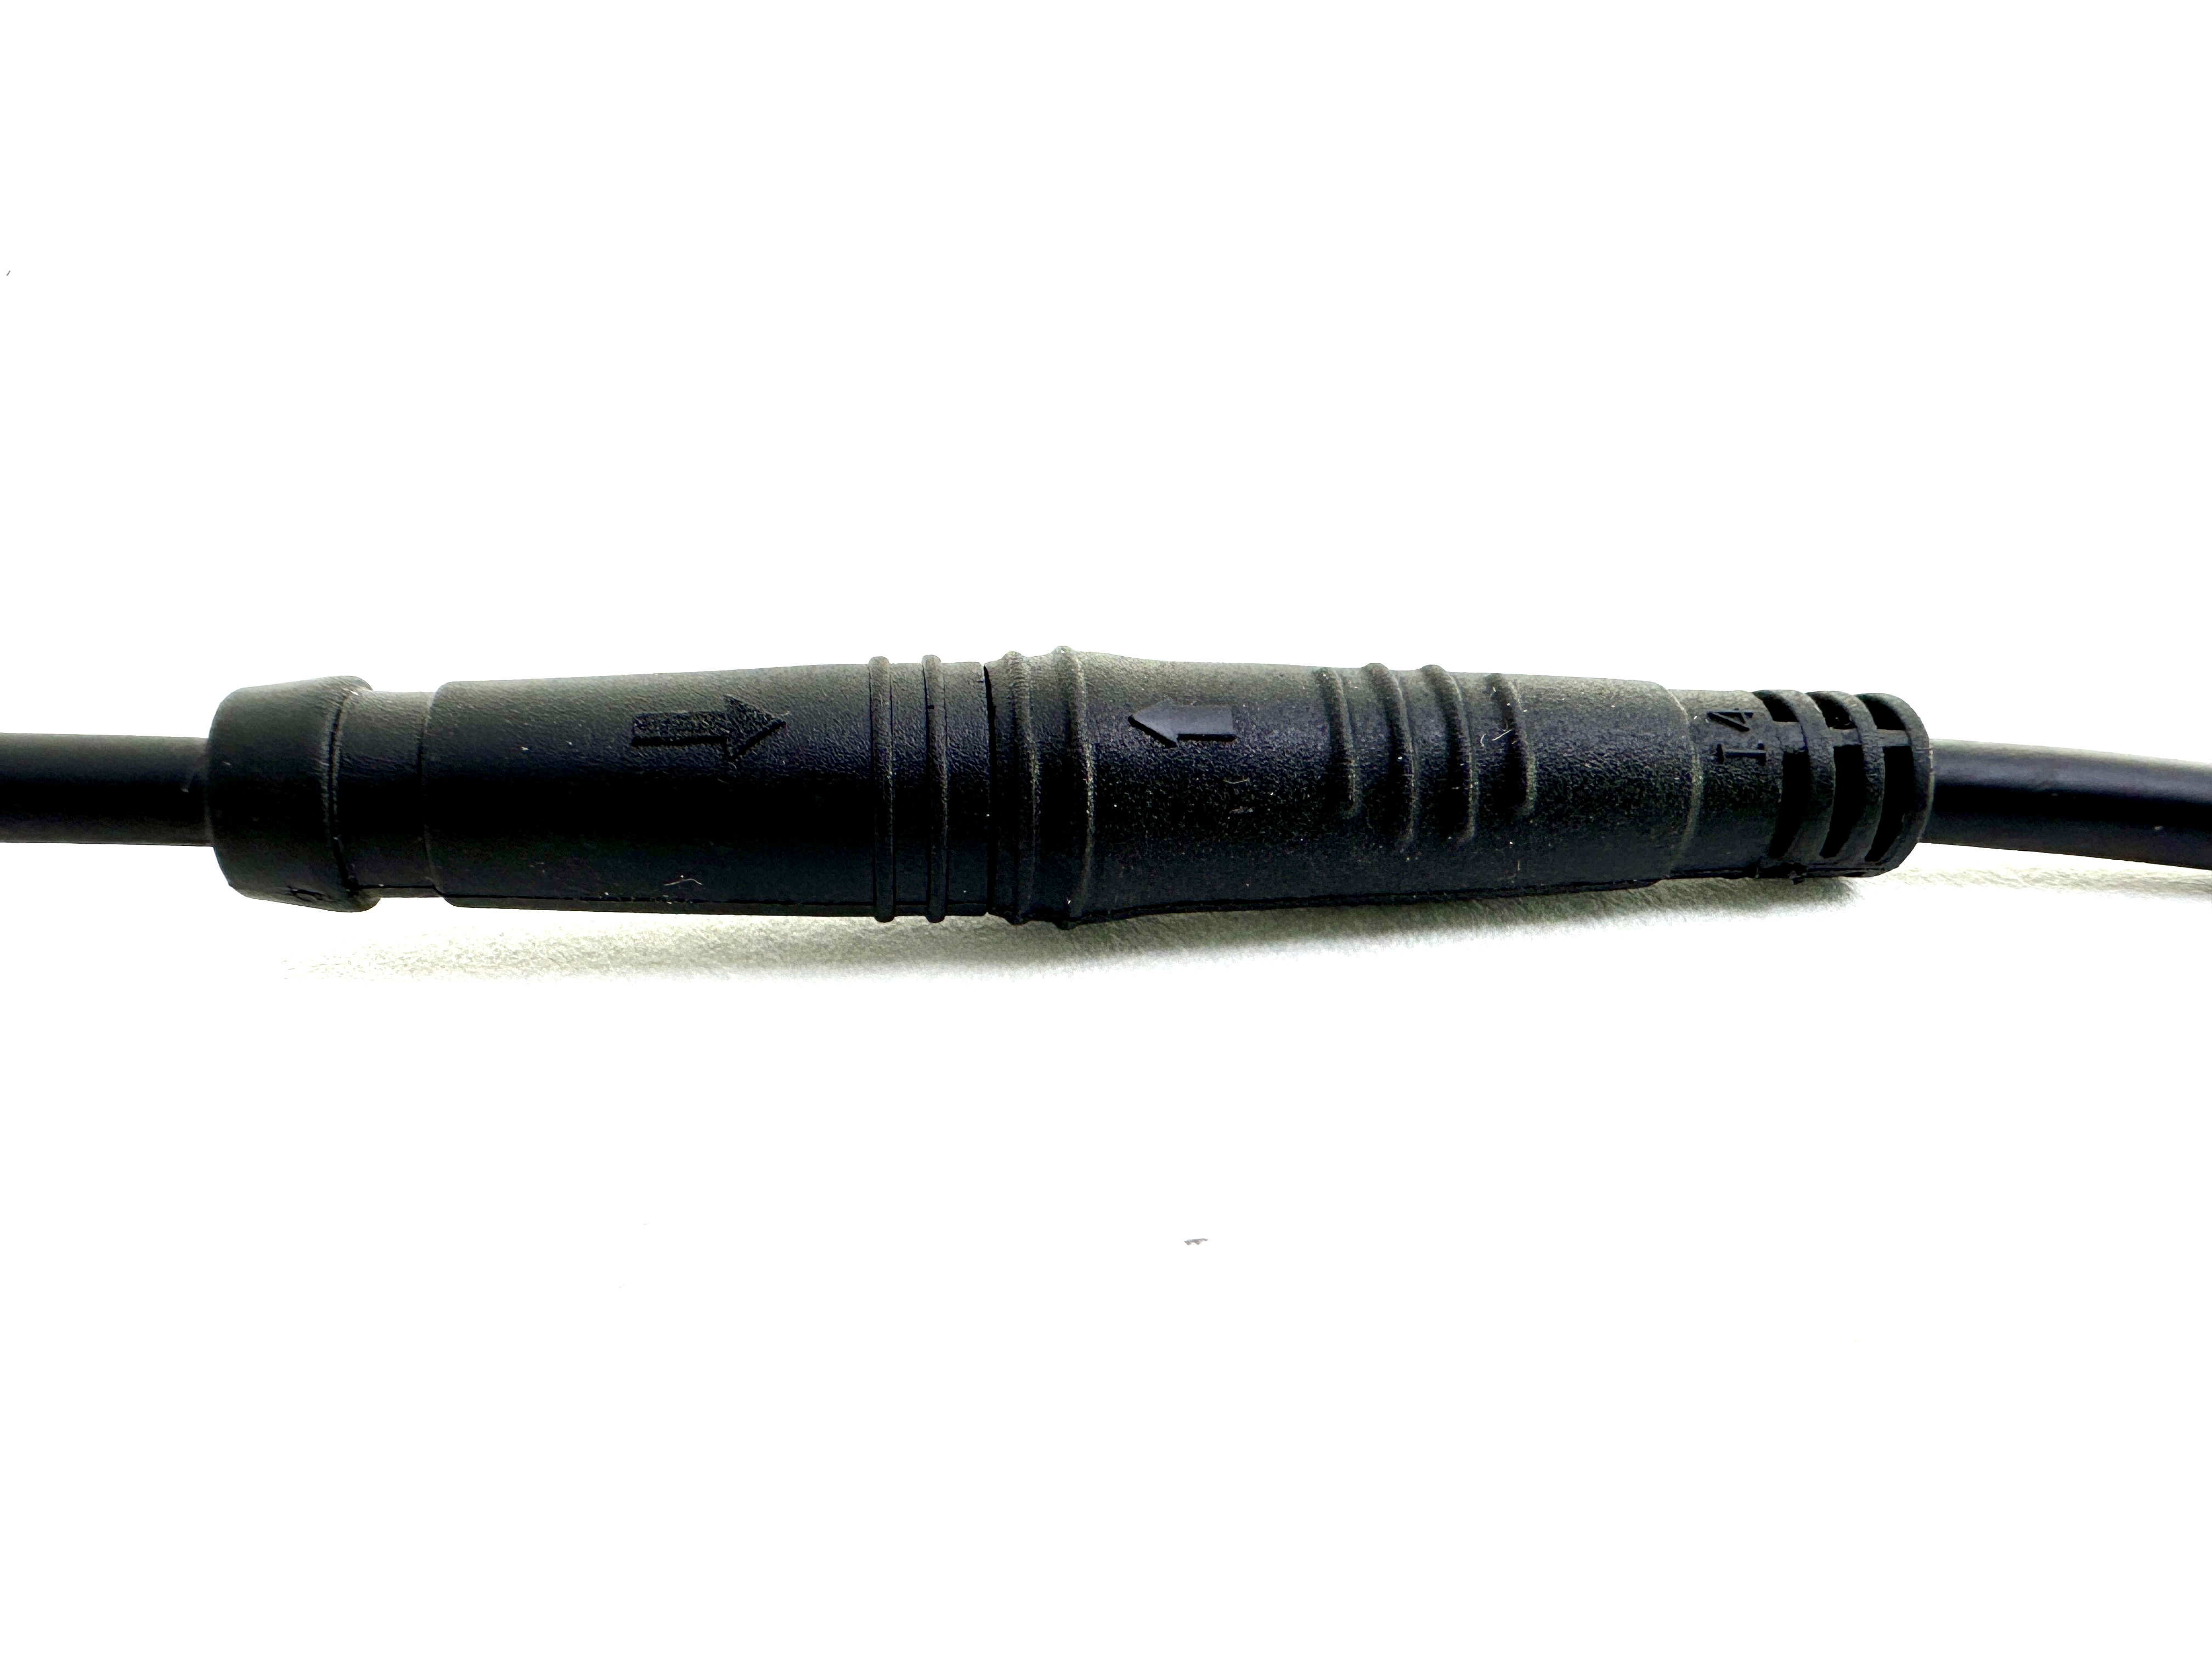 HIGO / Julet Câble d'extension 5,5 cm pour Ebike, 2 PIN femelle à mâle, jaune